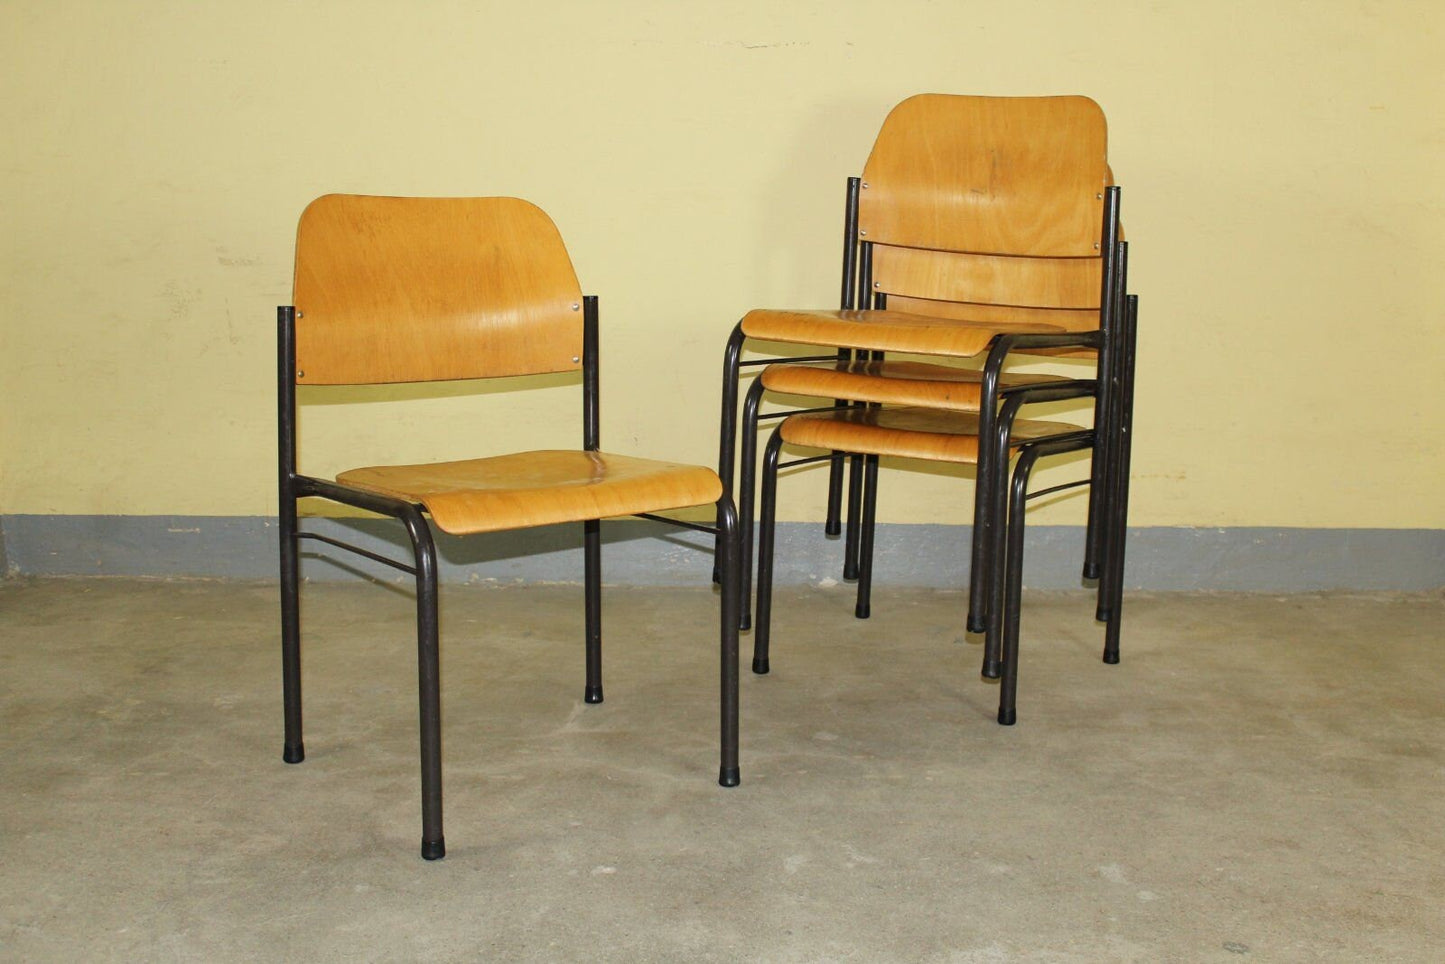 4er Set Vintage Holz Stapelstuhl Industrial Loft Stuhl Stühle